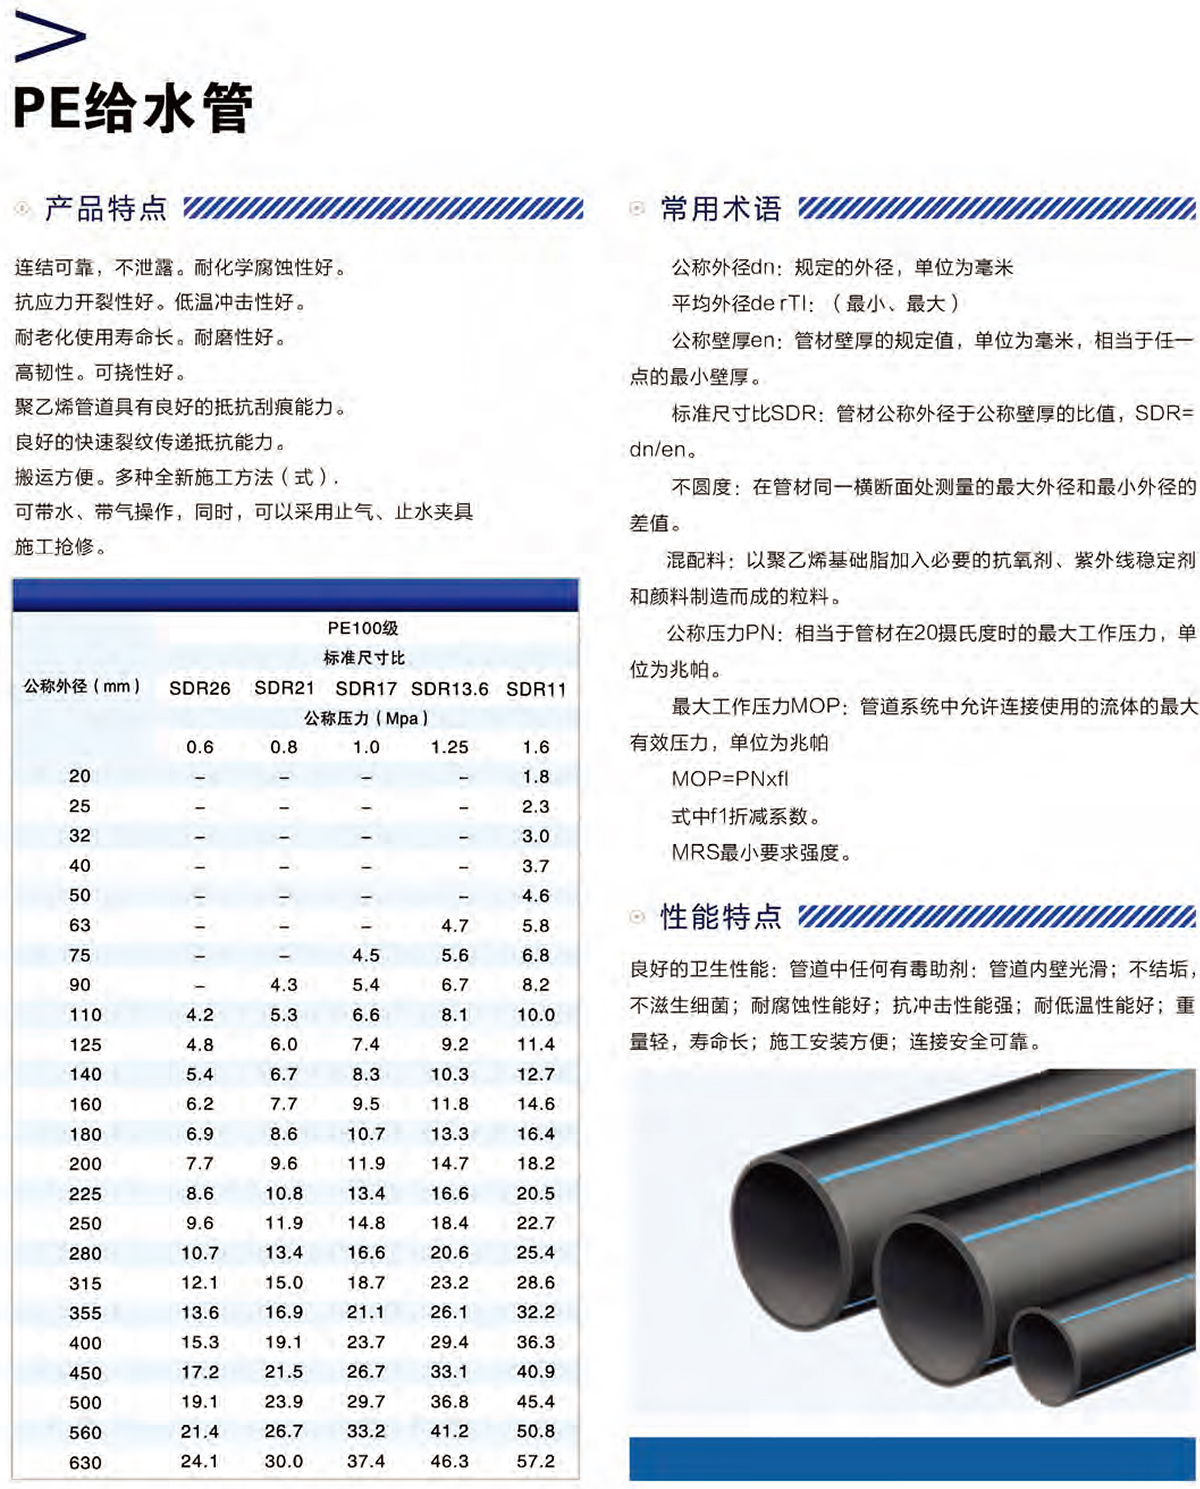 统塑管业C-PVC高压电力护套管,统塑管业HDPE多肋增强缠绕波纹管,湖南统塑管业有限公司